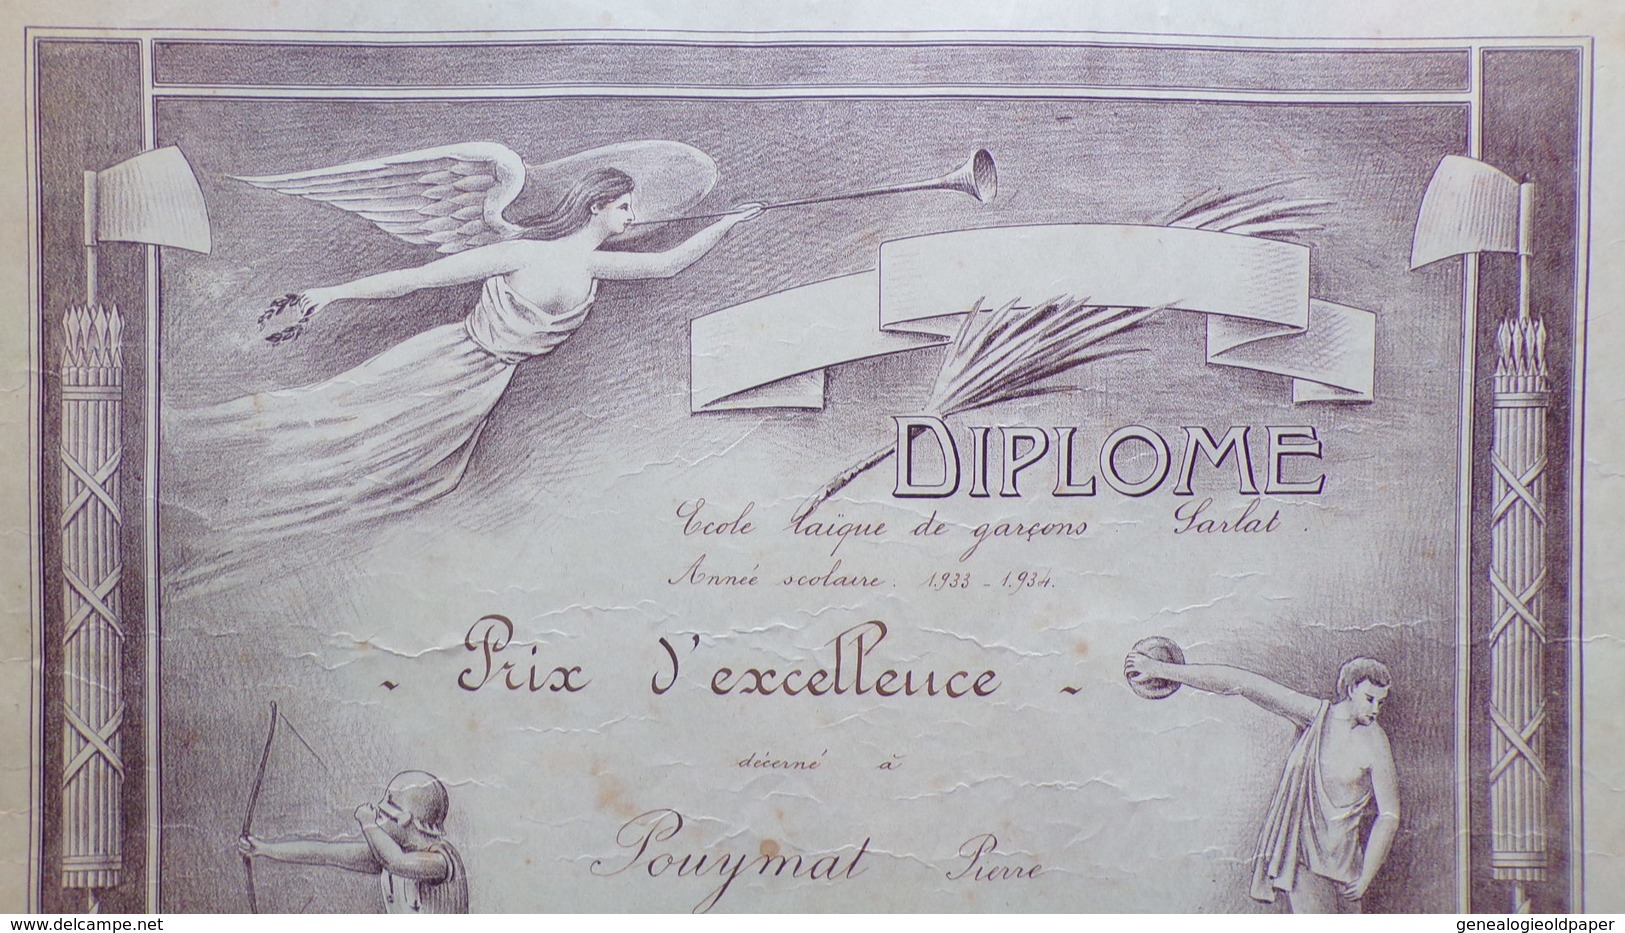 24- SARLAT- RARE DIPLOME ECOLE LAIQUE DE GARCONS-1933-1934- PRIX D' EXCELLENCE  A PIERRE POUYNAT -DISCOBOLE-TIR ARC - Diploma & School Reports